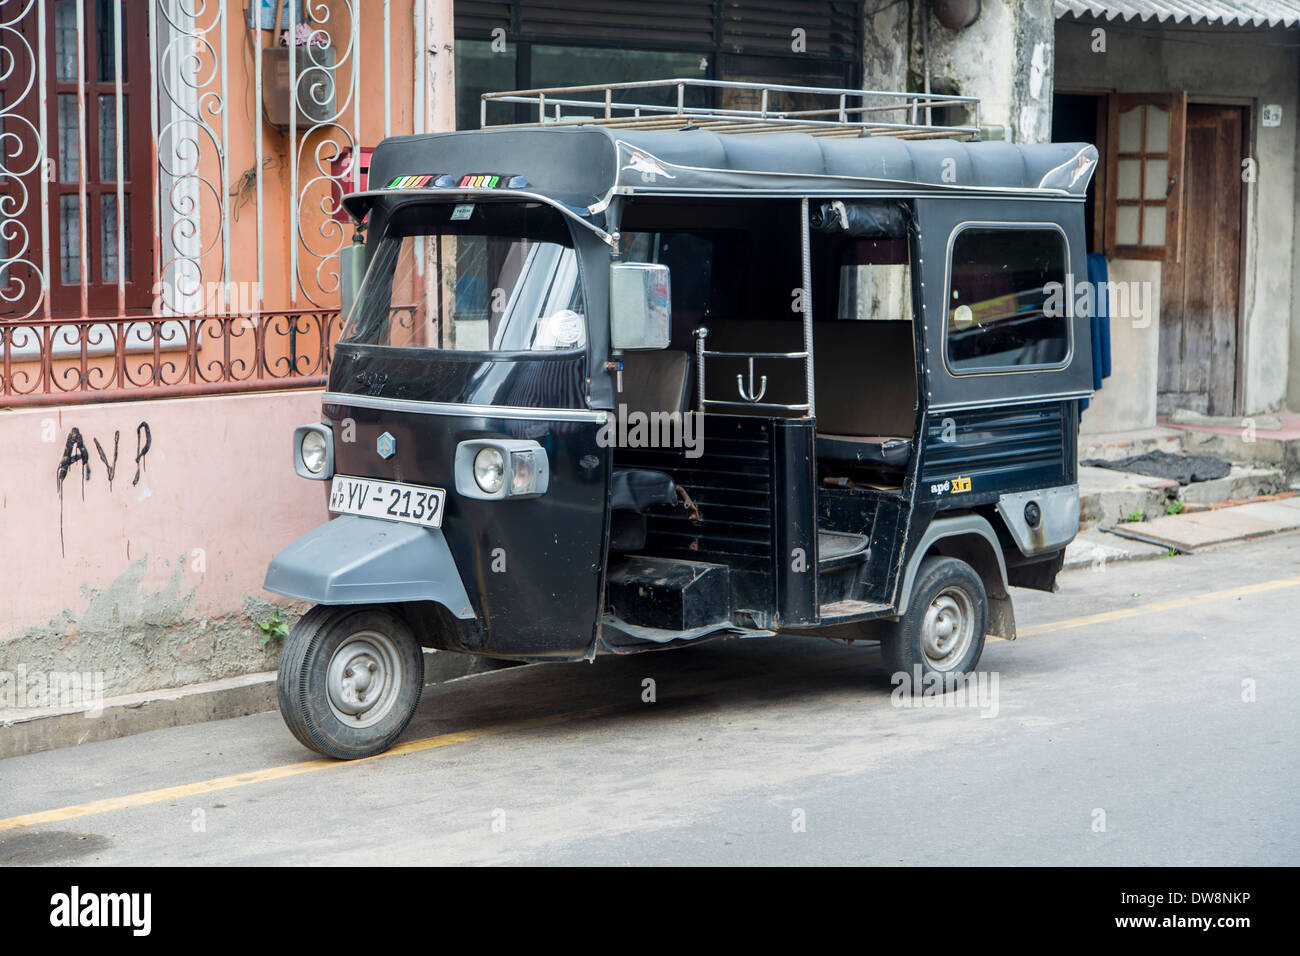 Colombo, Sri lanka - 23 gennaio 2014: auto rickshaw o tuk-tuk sulla strada di colombo. La maggior parte di tuk-tuks in sri lanka sono leggermente modificati Bajaj Indian modello importato dall'india. Foto Stock